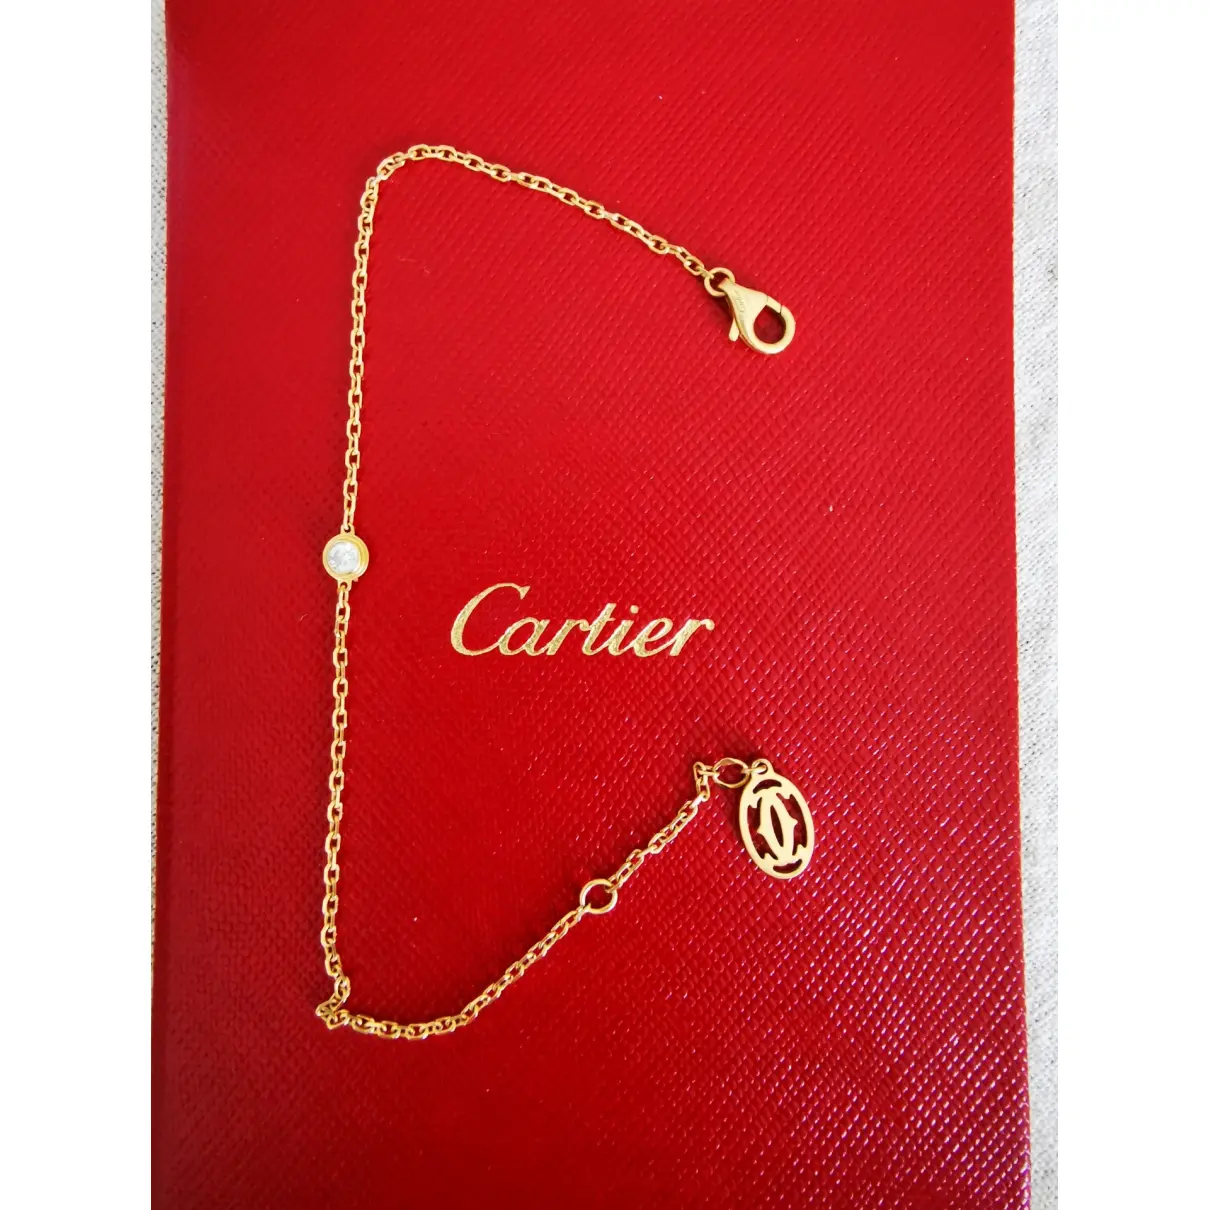 Buy Cartier Yellow gold bracelet online